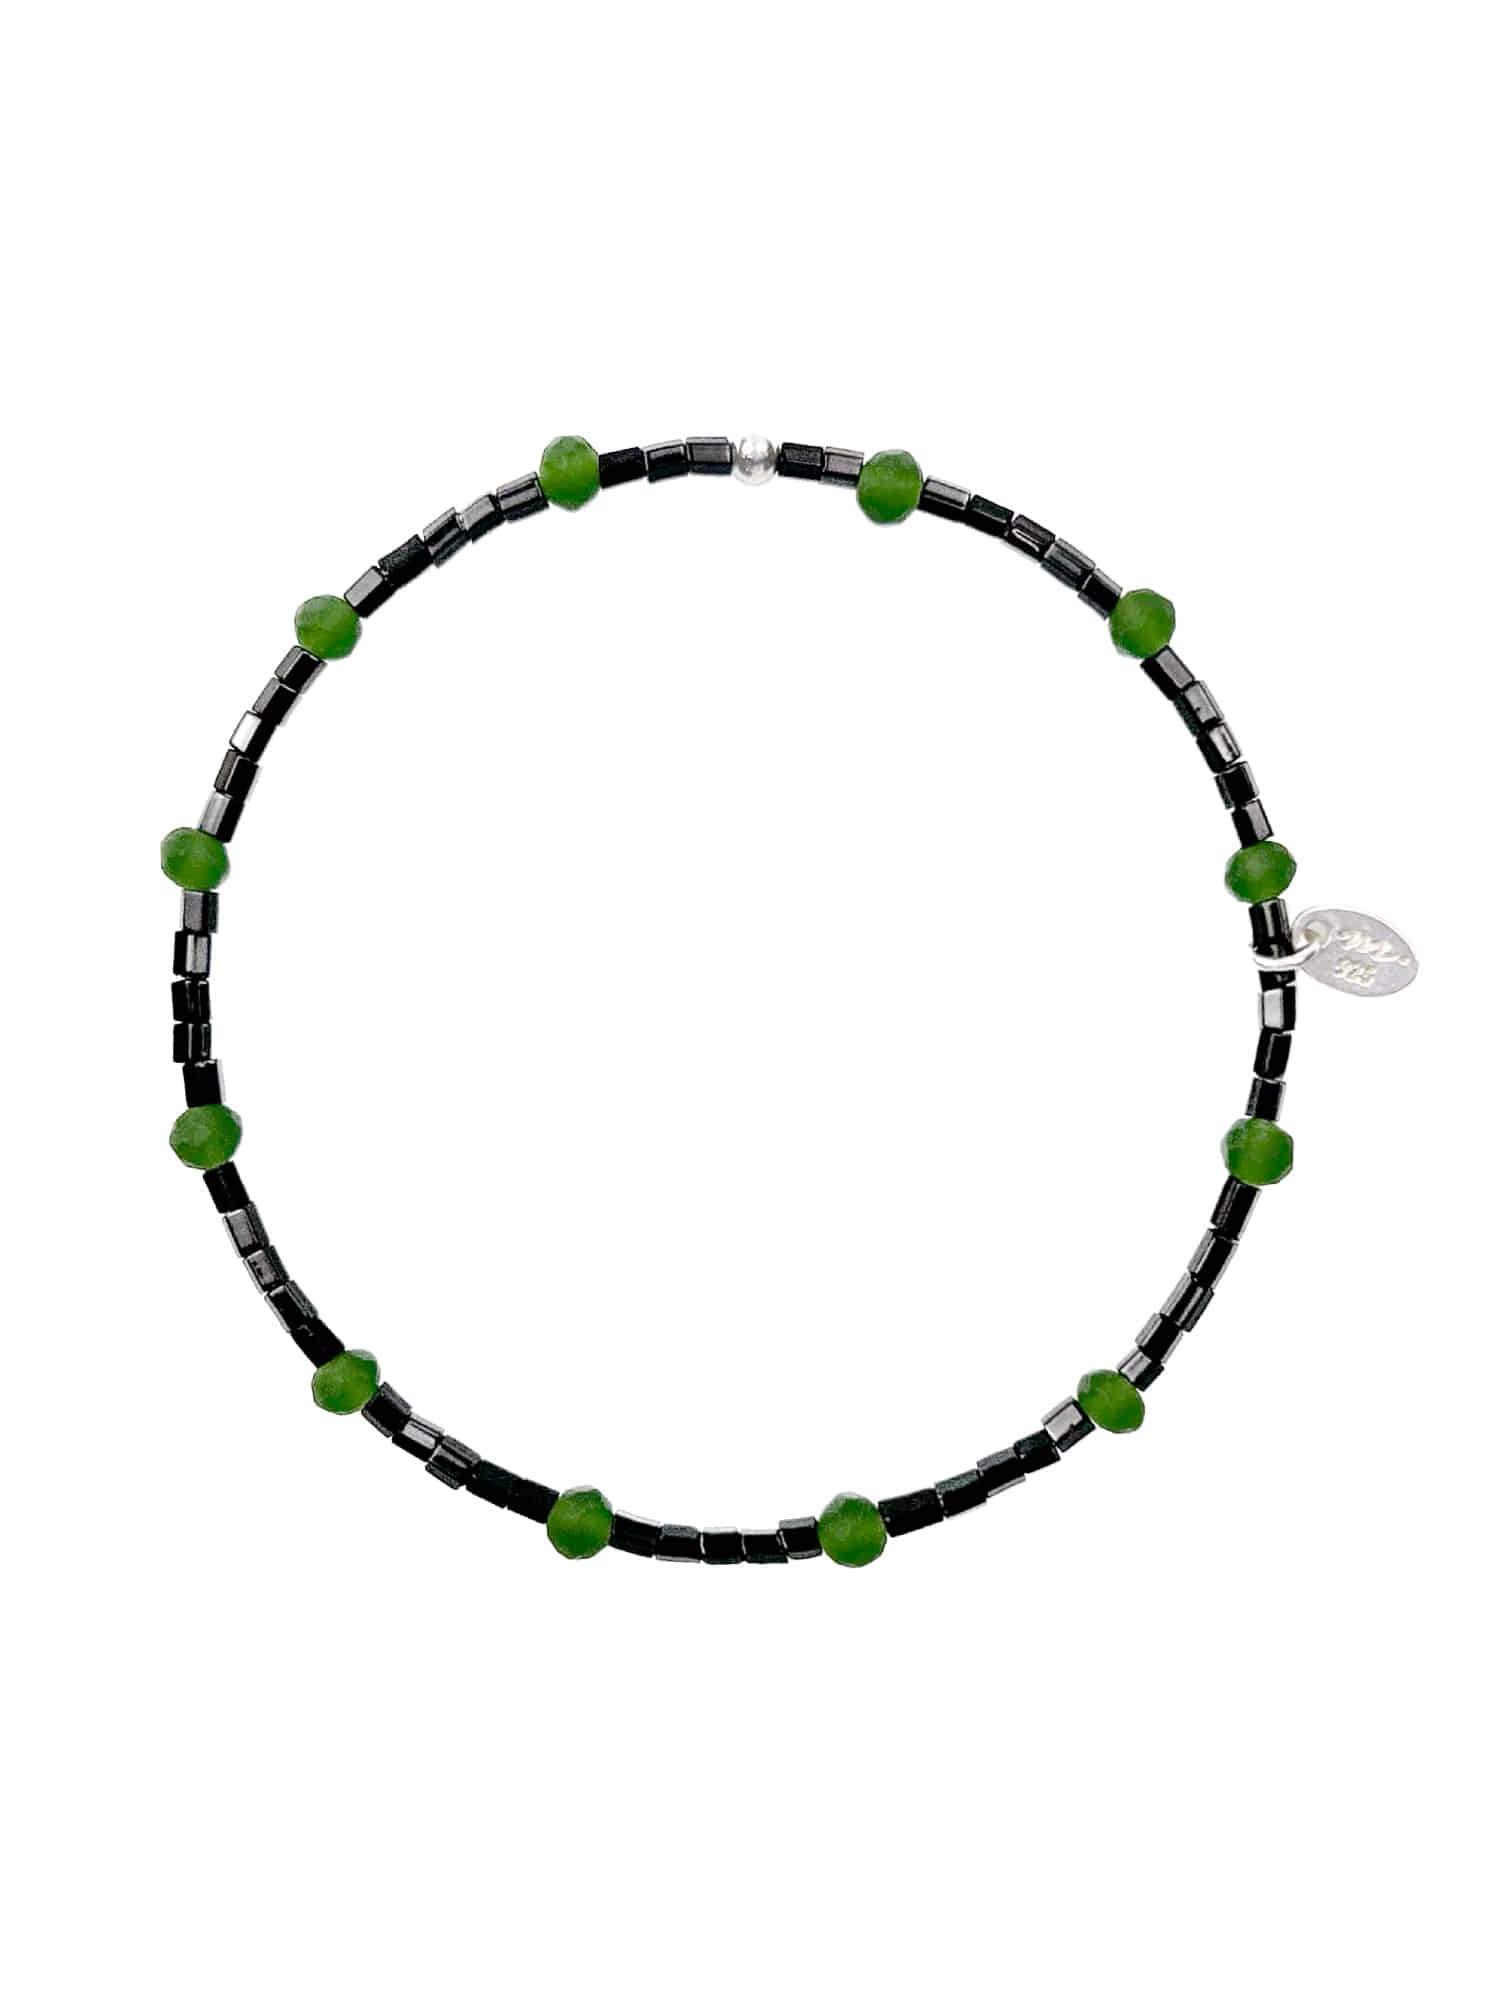 Viny Beads Bracelet